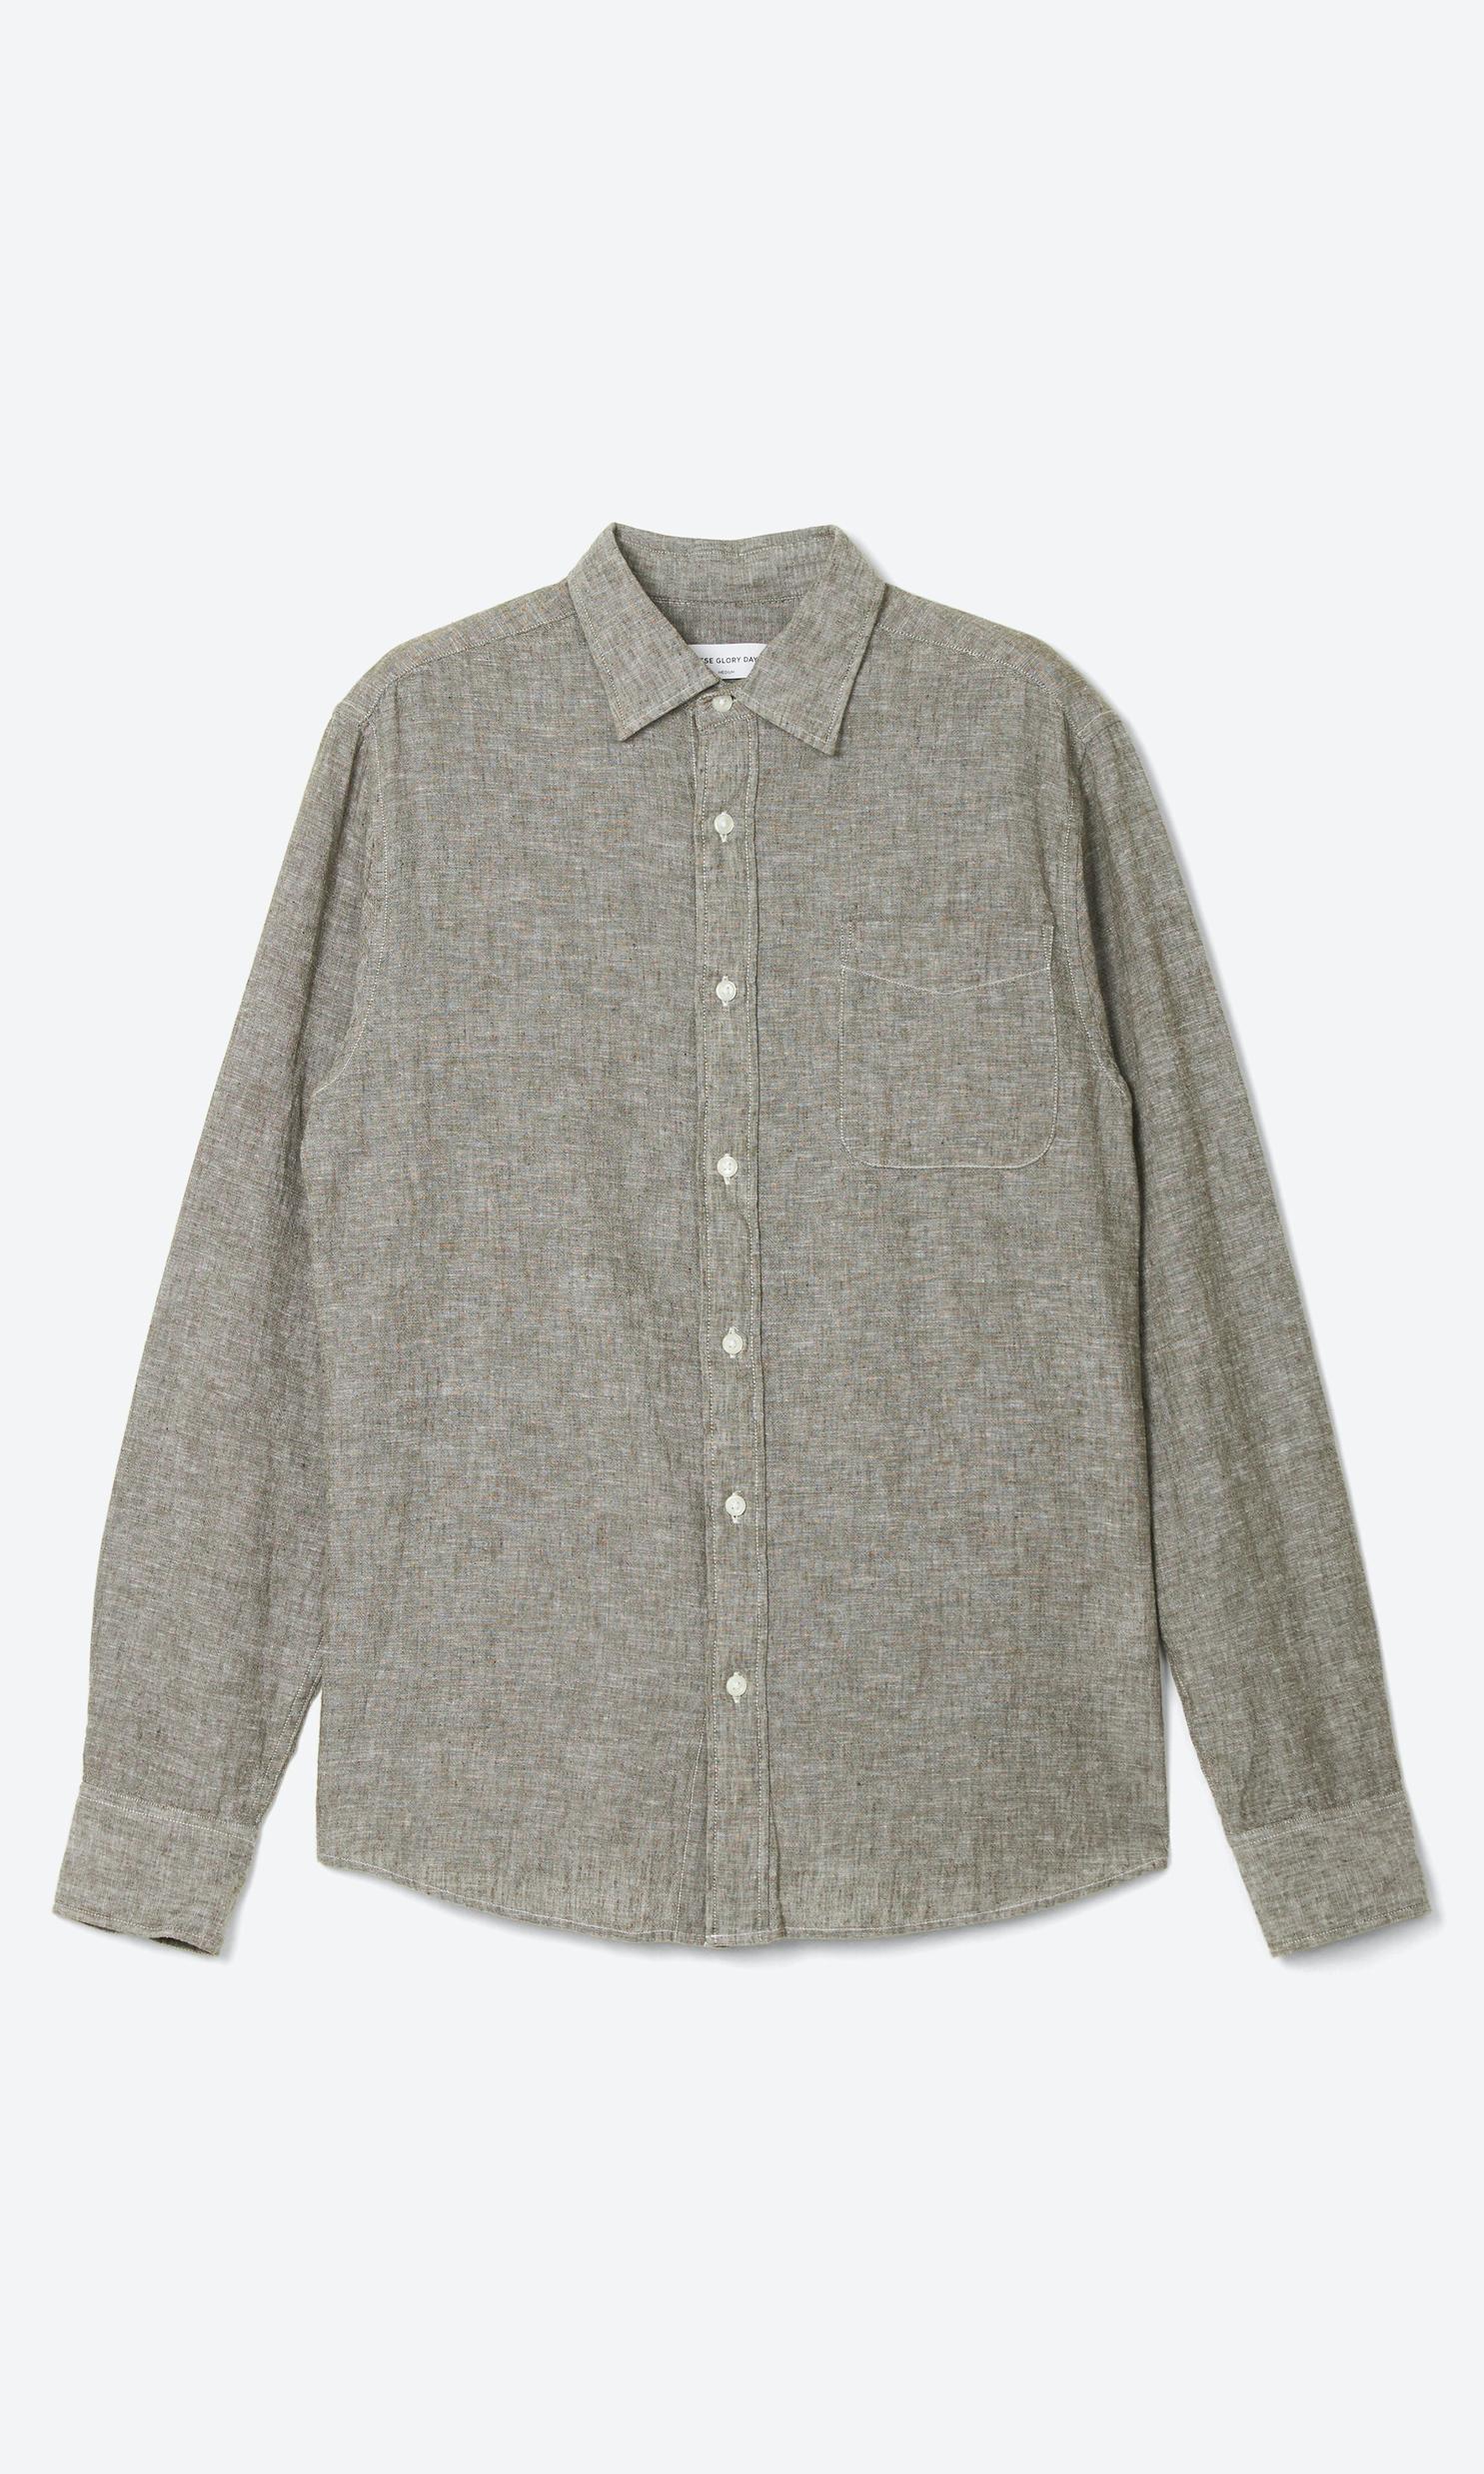 Gainsbourg Skjorta för 799 kr på Volt